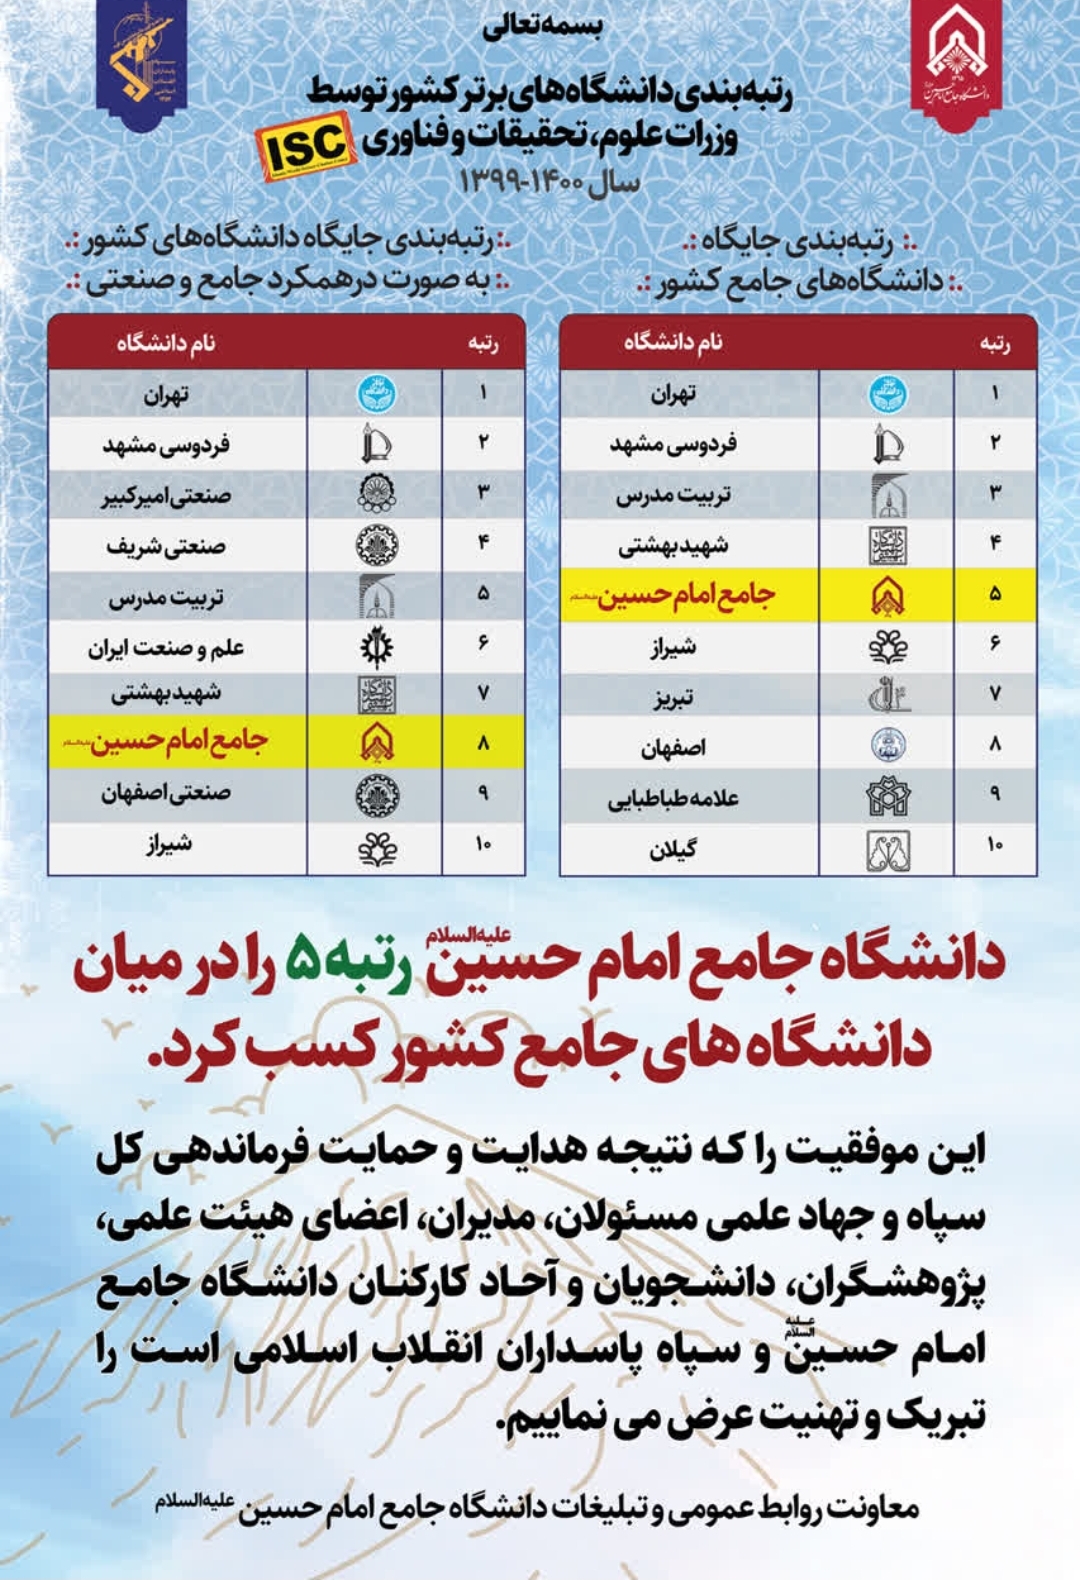 دانشگاه جامع امام حسین(ع) رتبه 5 را در میان دانشگاه های جامع کشور کسب کرد